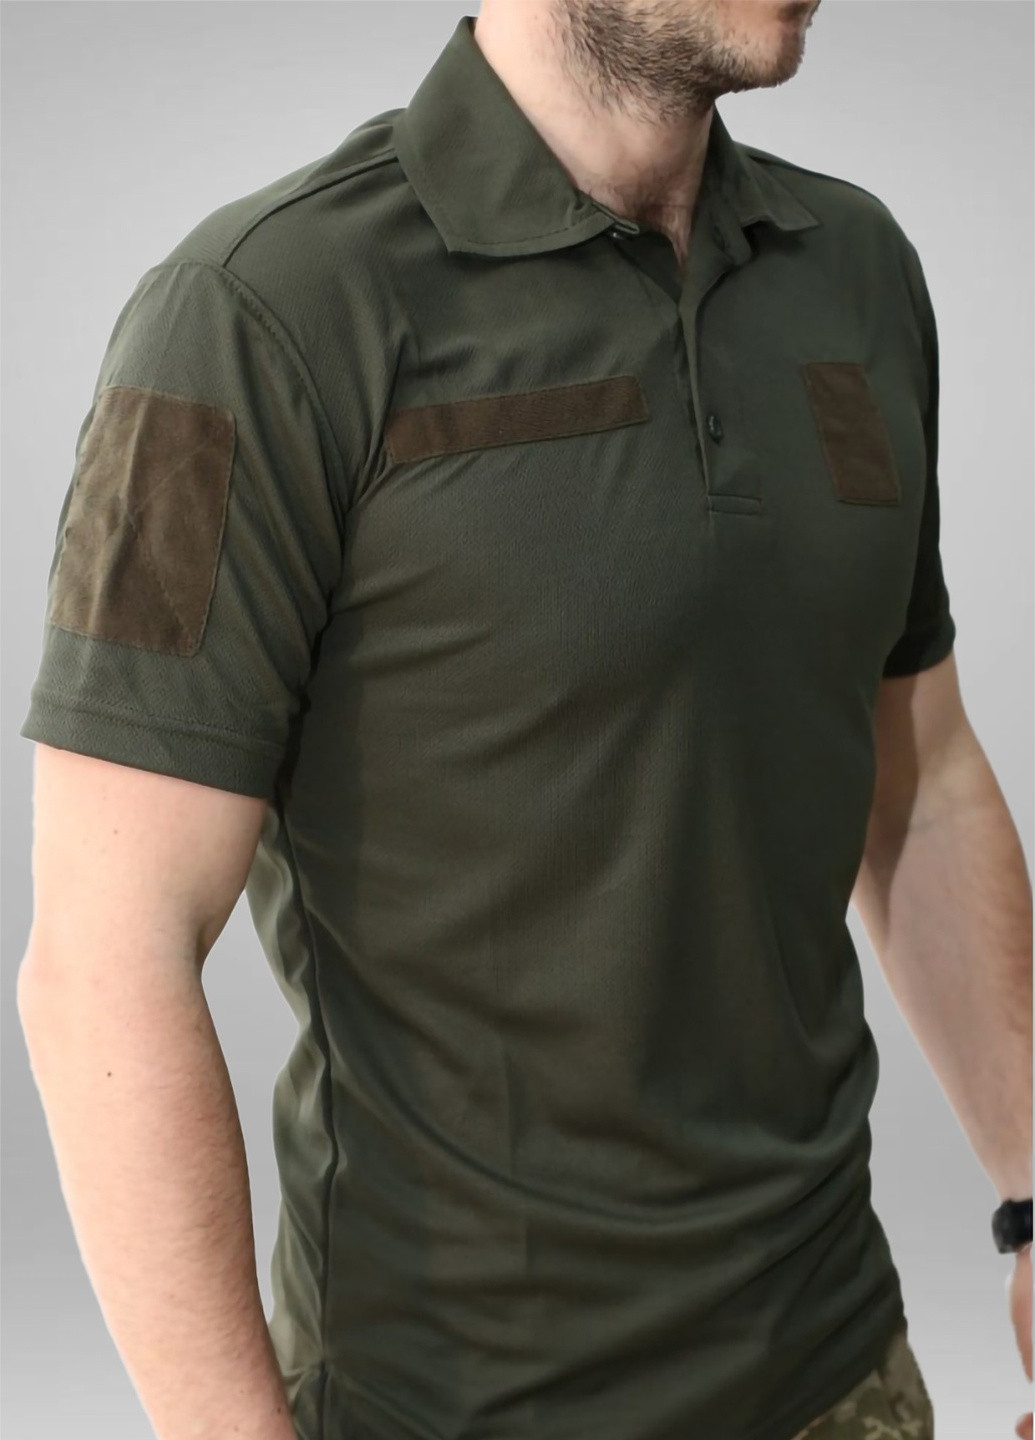 Оливковая футболка-футболка поло тактическая всу coolmax m546-60 оливка для мужчин Malta